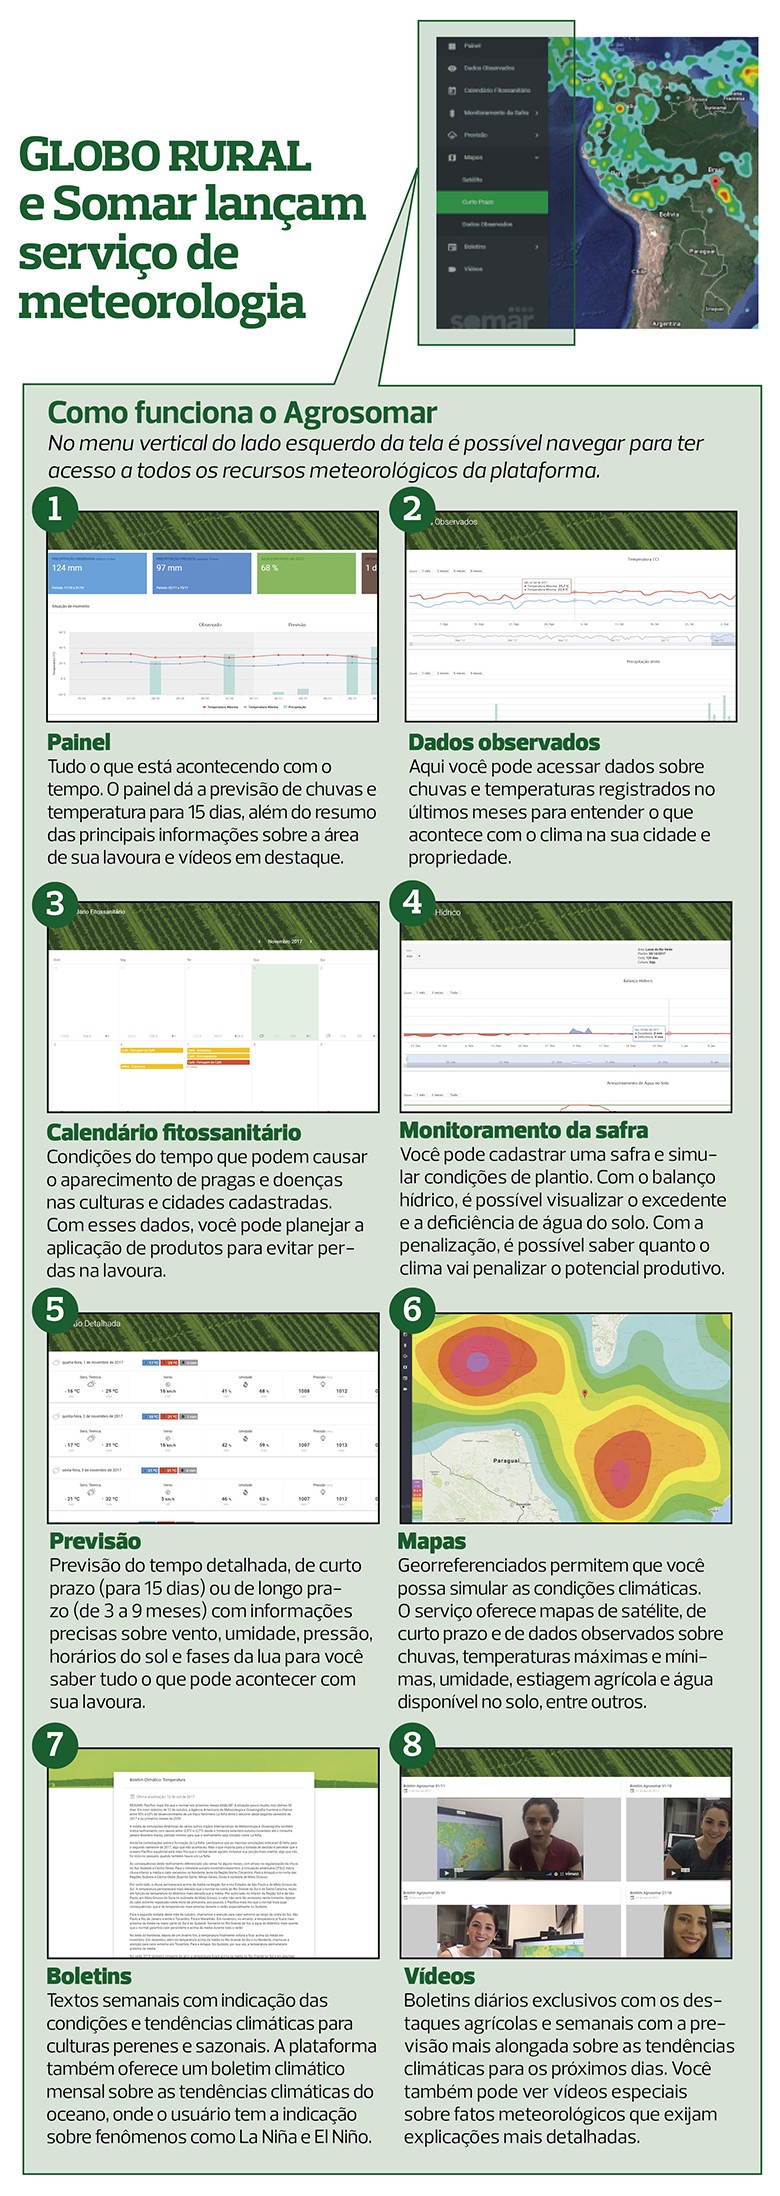 agrosomar-infografico (Foto: Globo Rural)